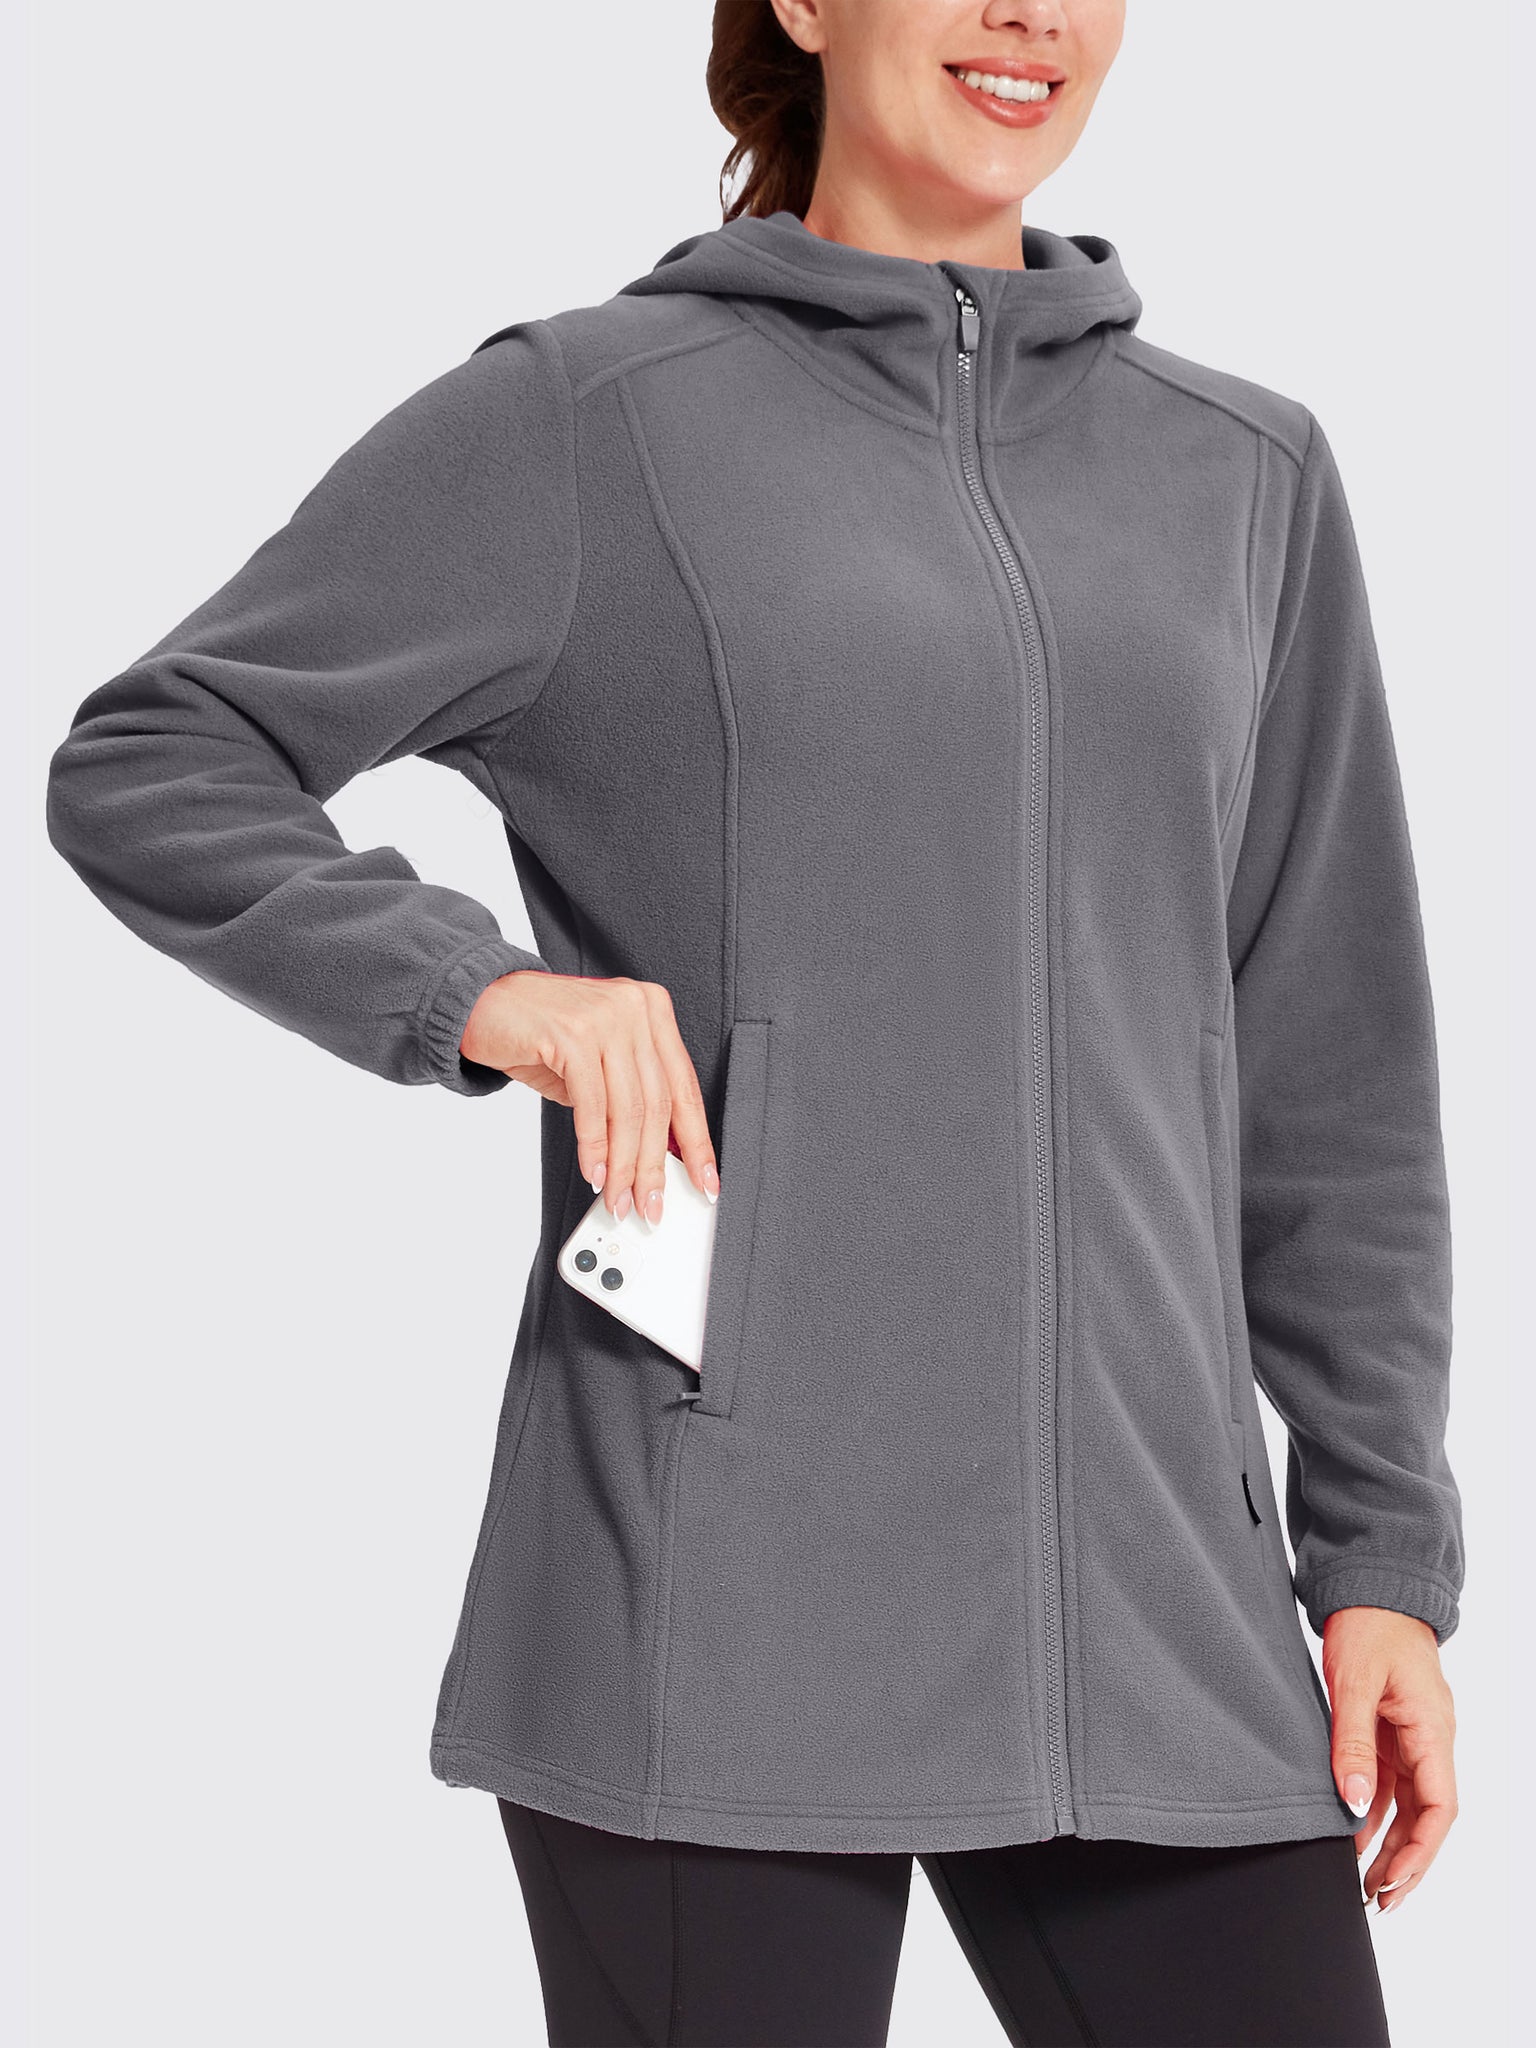 Women's Fleece Full-Zip Jacket DeepGray1